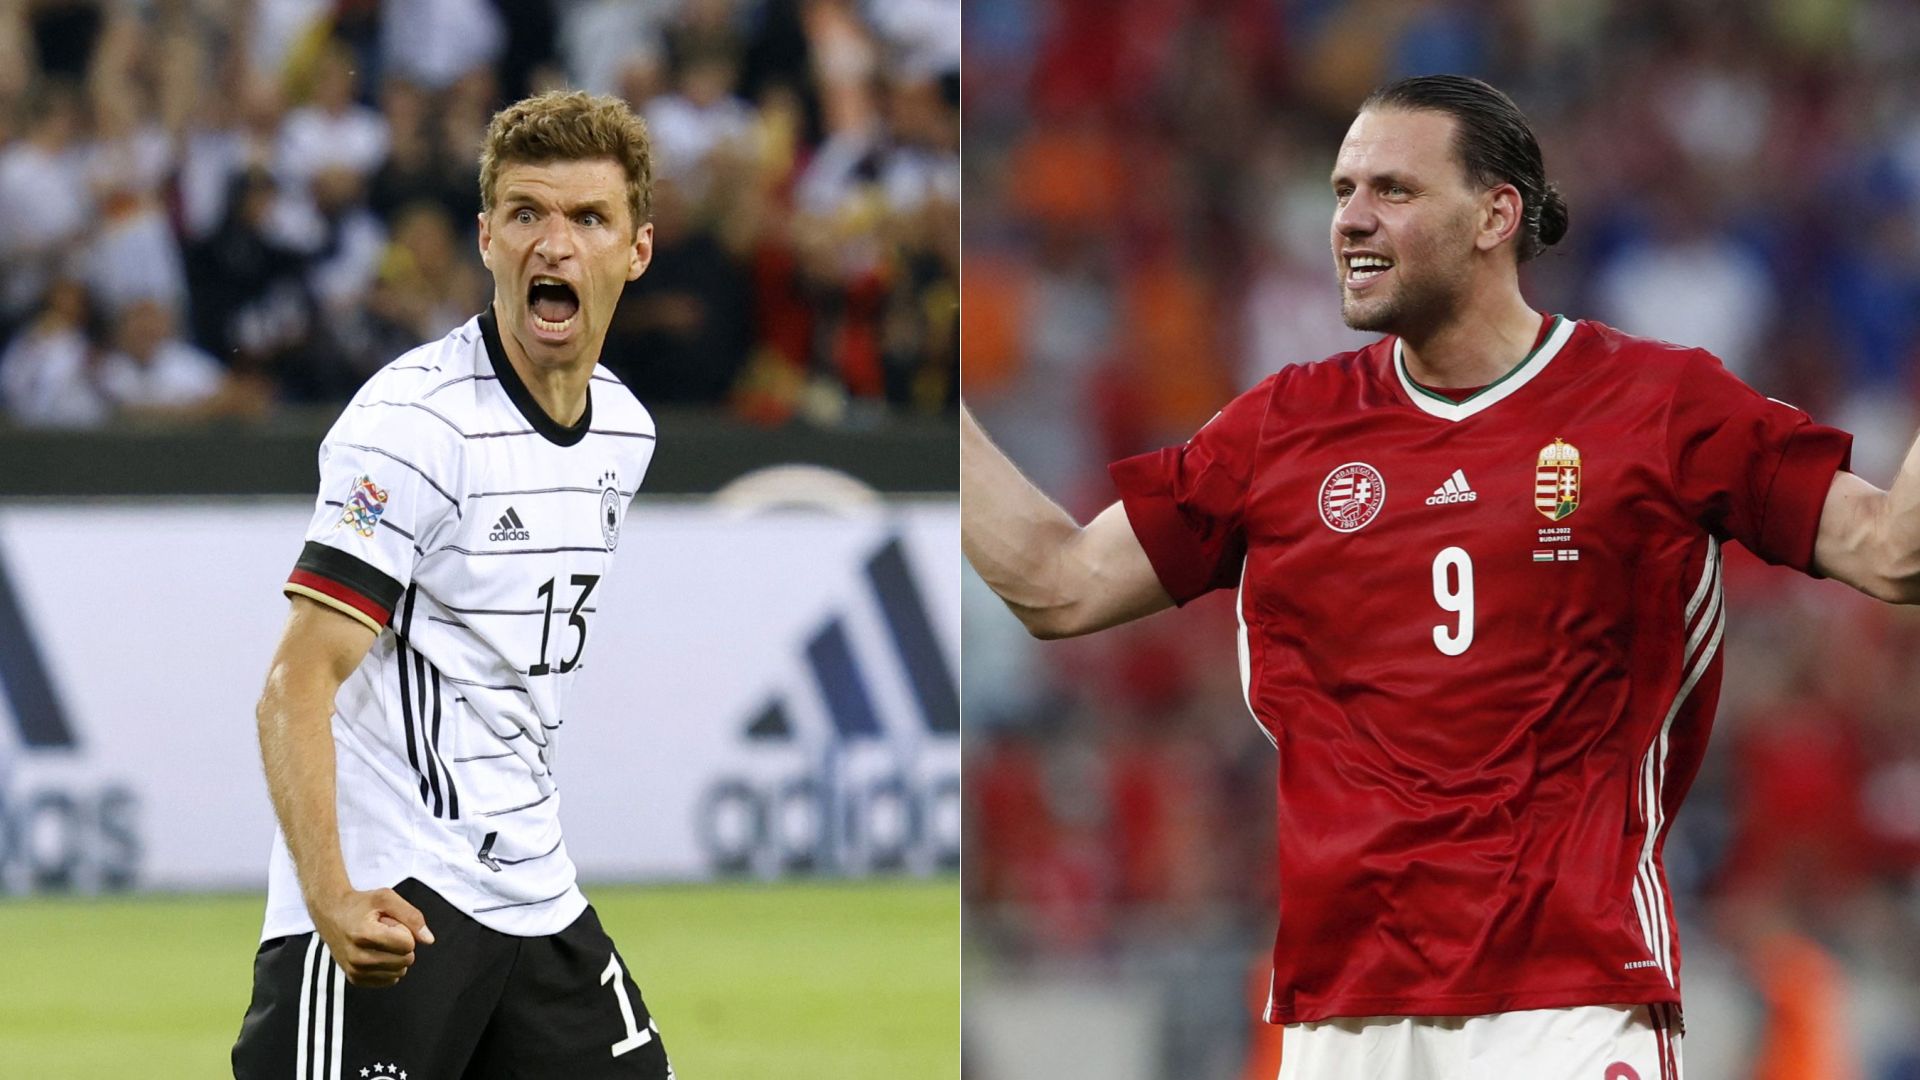 Alemania vs Hungría: Se medirán contra el Grupo A3 de la Nations League 2022